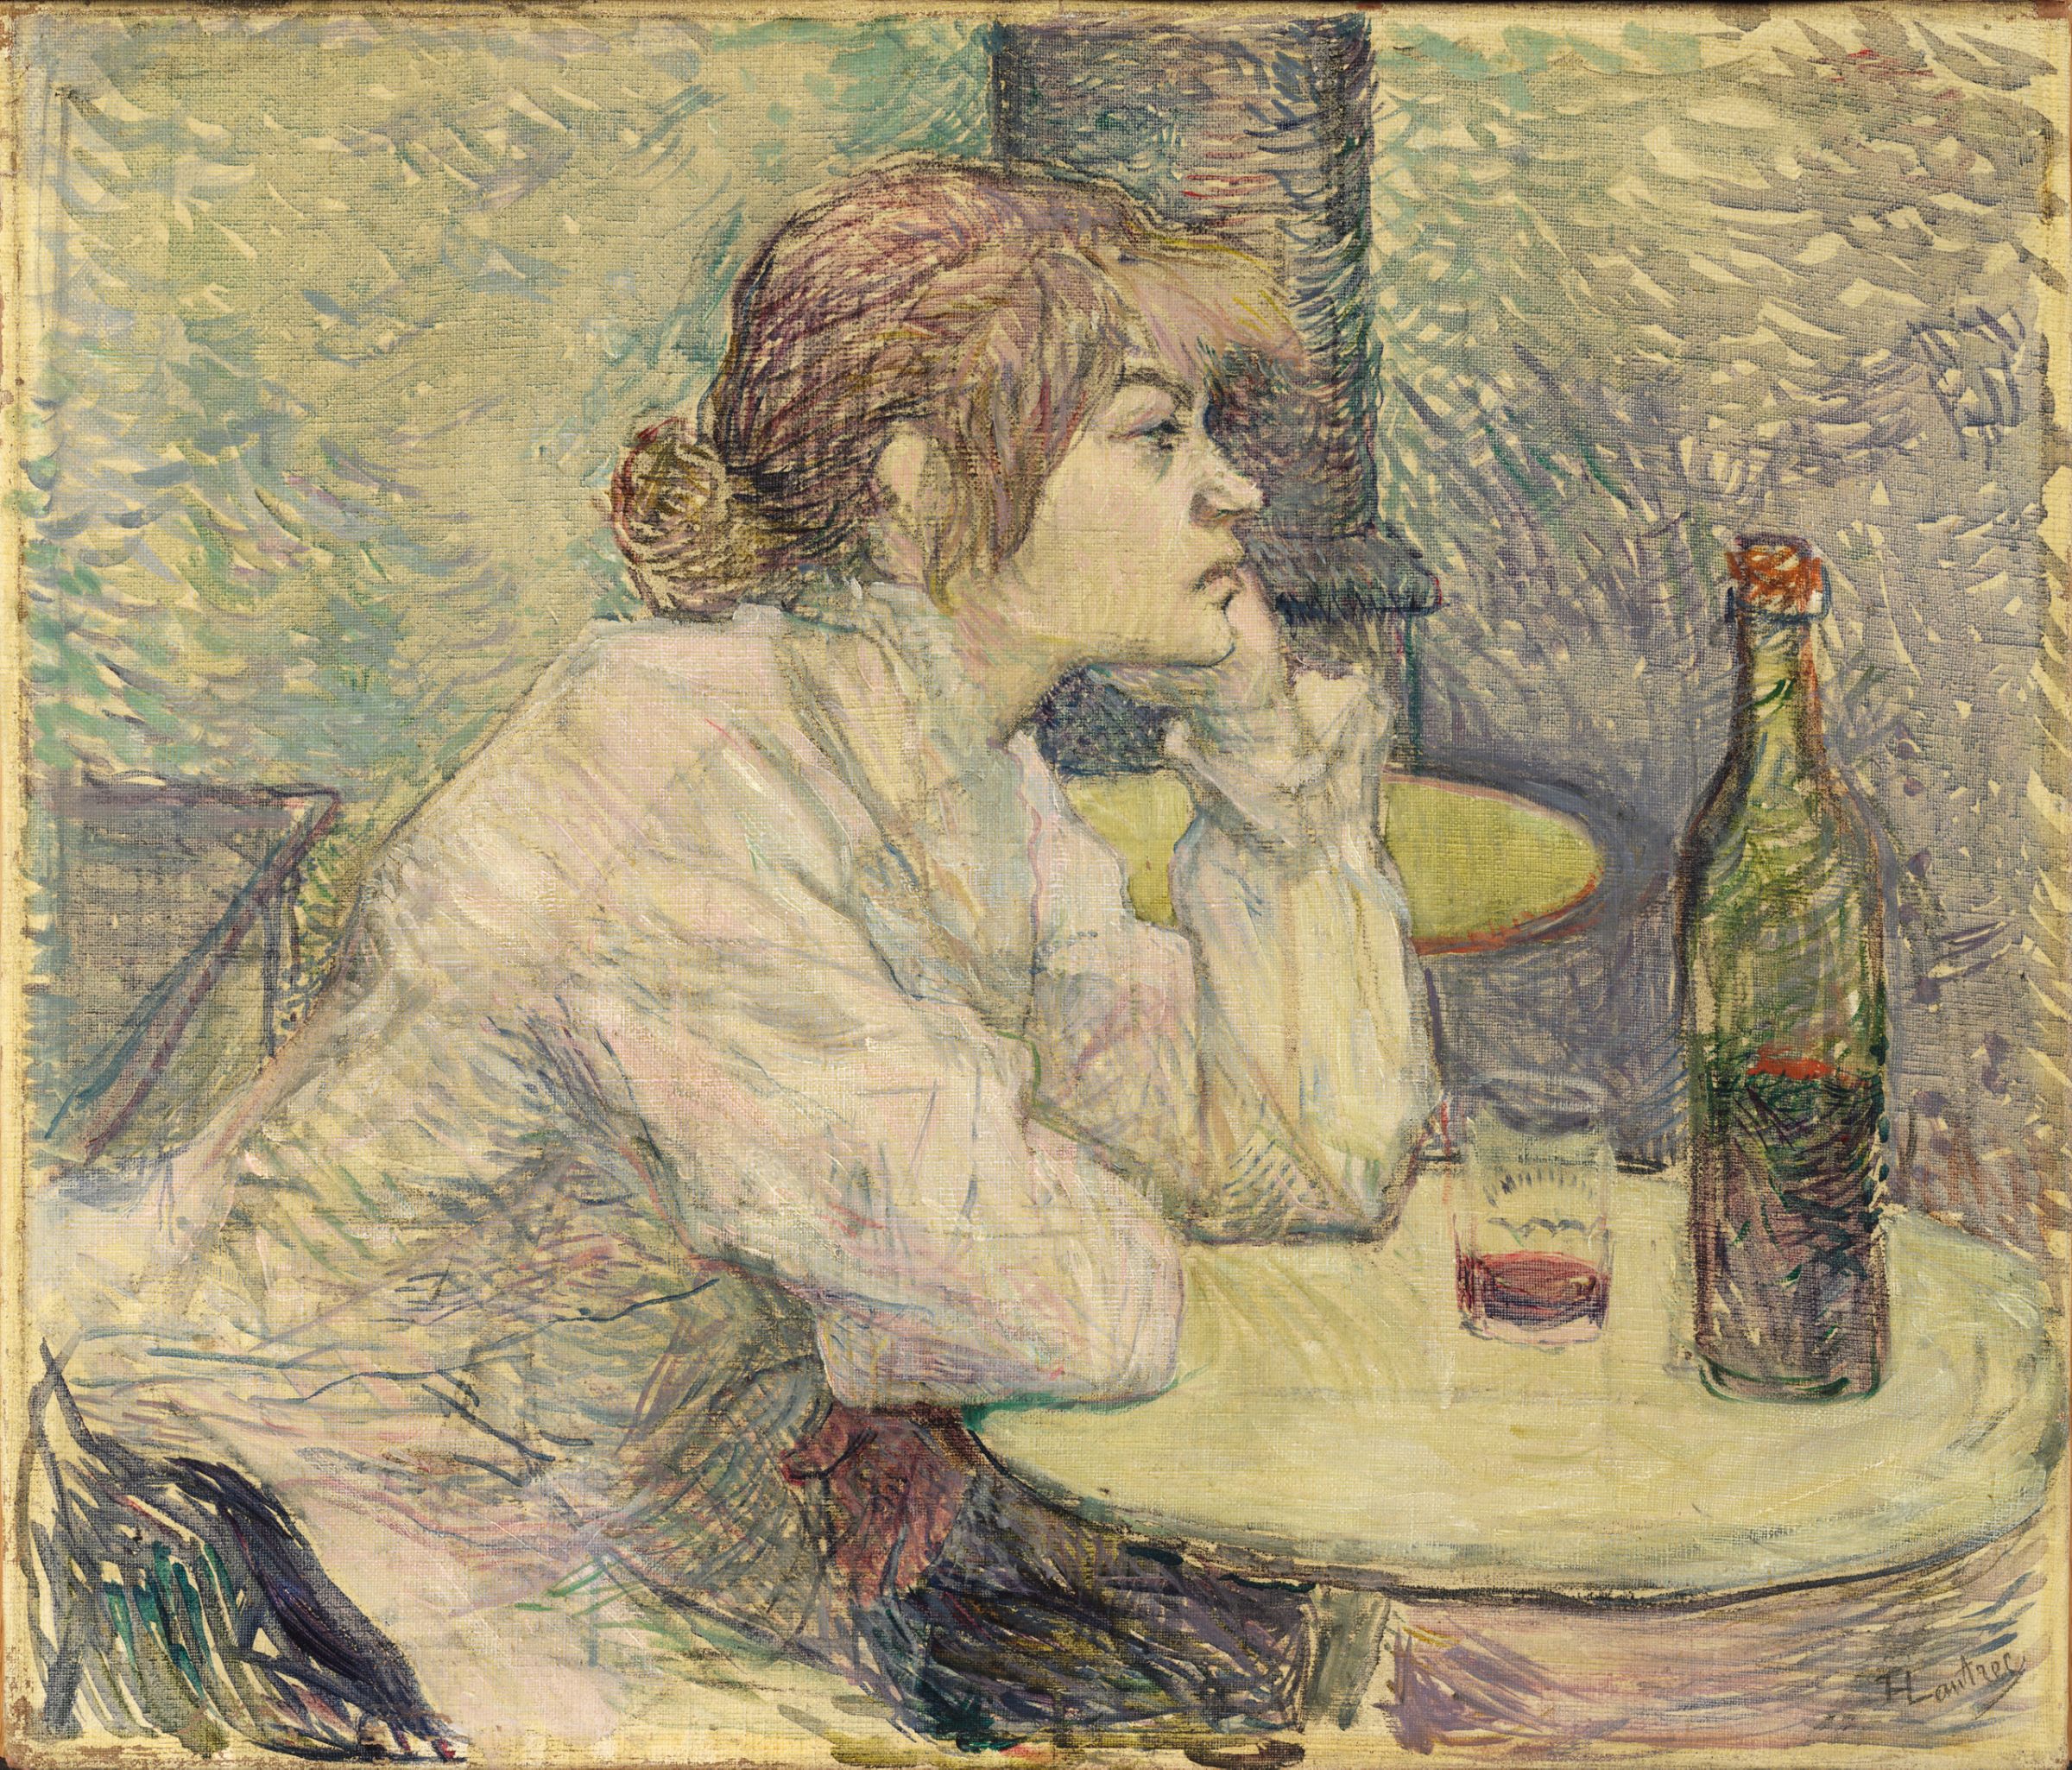 De Kater ( Suzanne Valadon) by Henri de Toulouse-Lautrec - 1887- 89 - 55,3 x 47 cm 